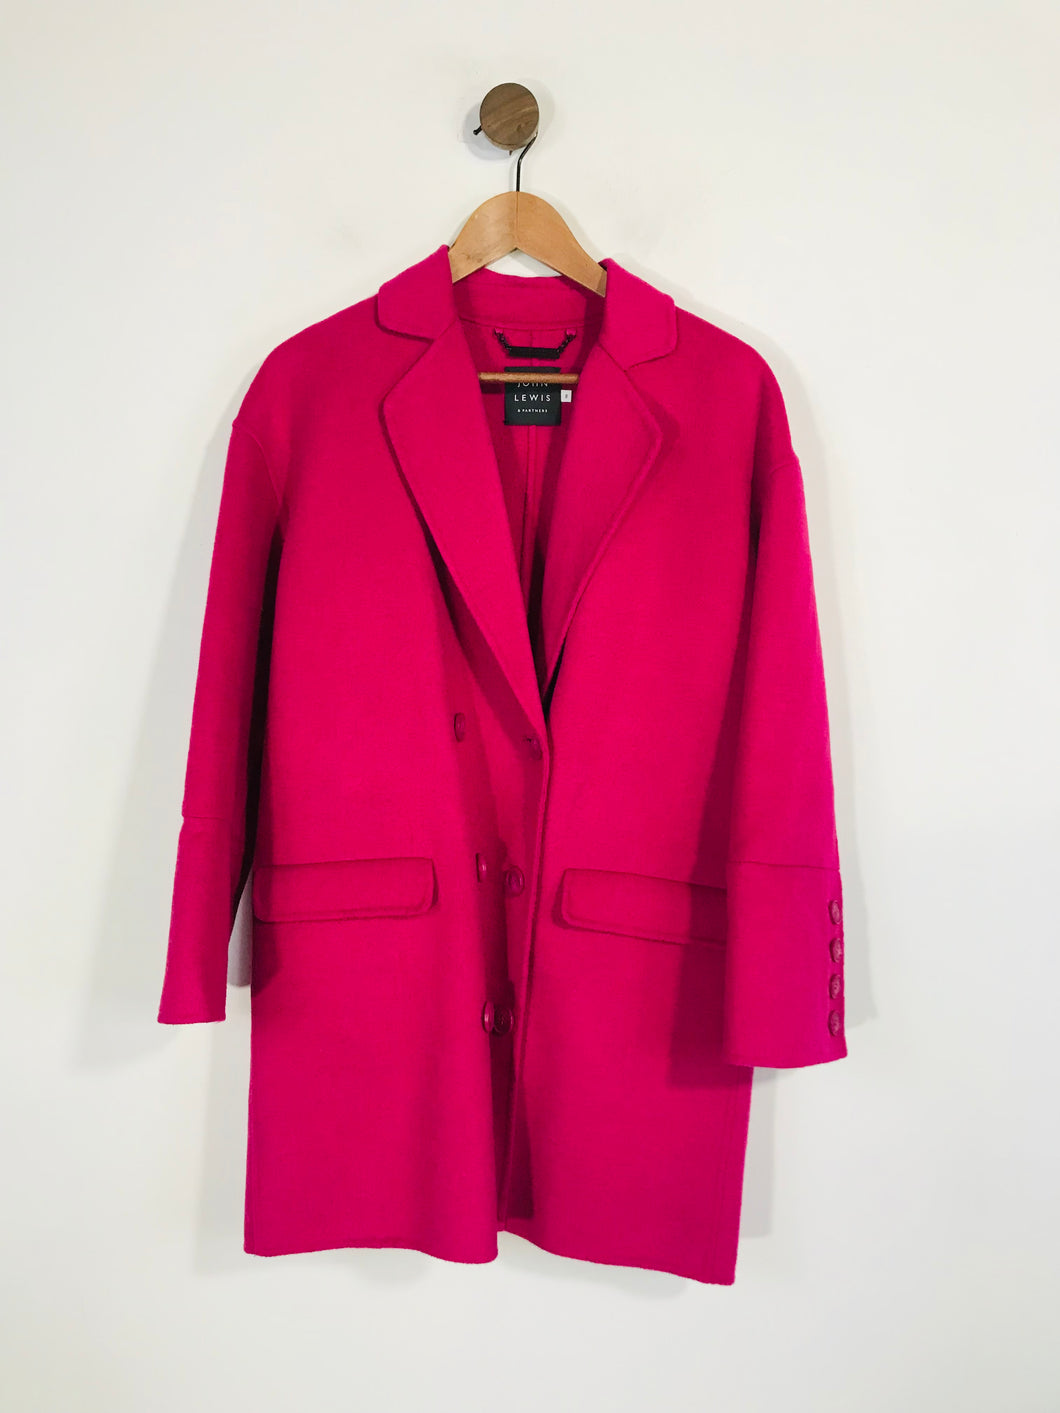 John Lewis Women's Wool Overcoat Coat | UK8 | Pink